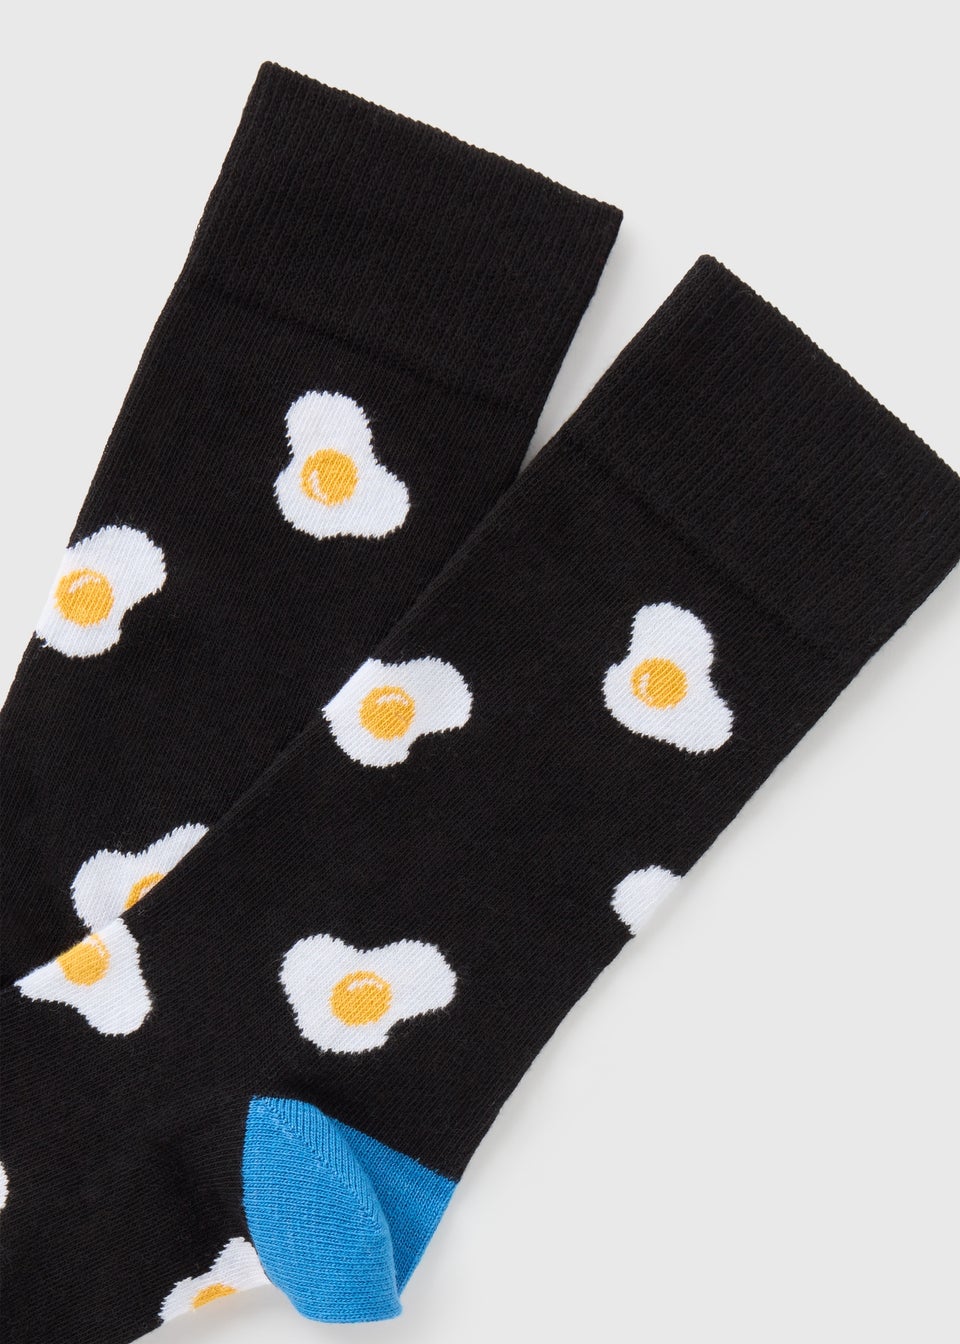 Black Fried Egg Socks